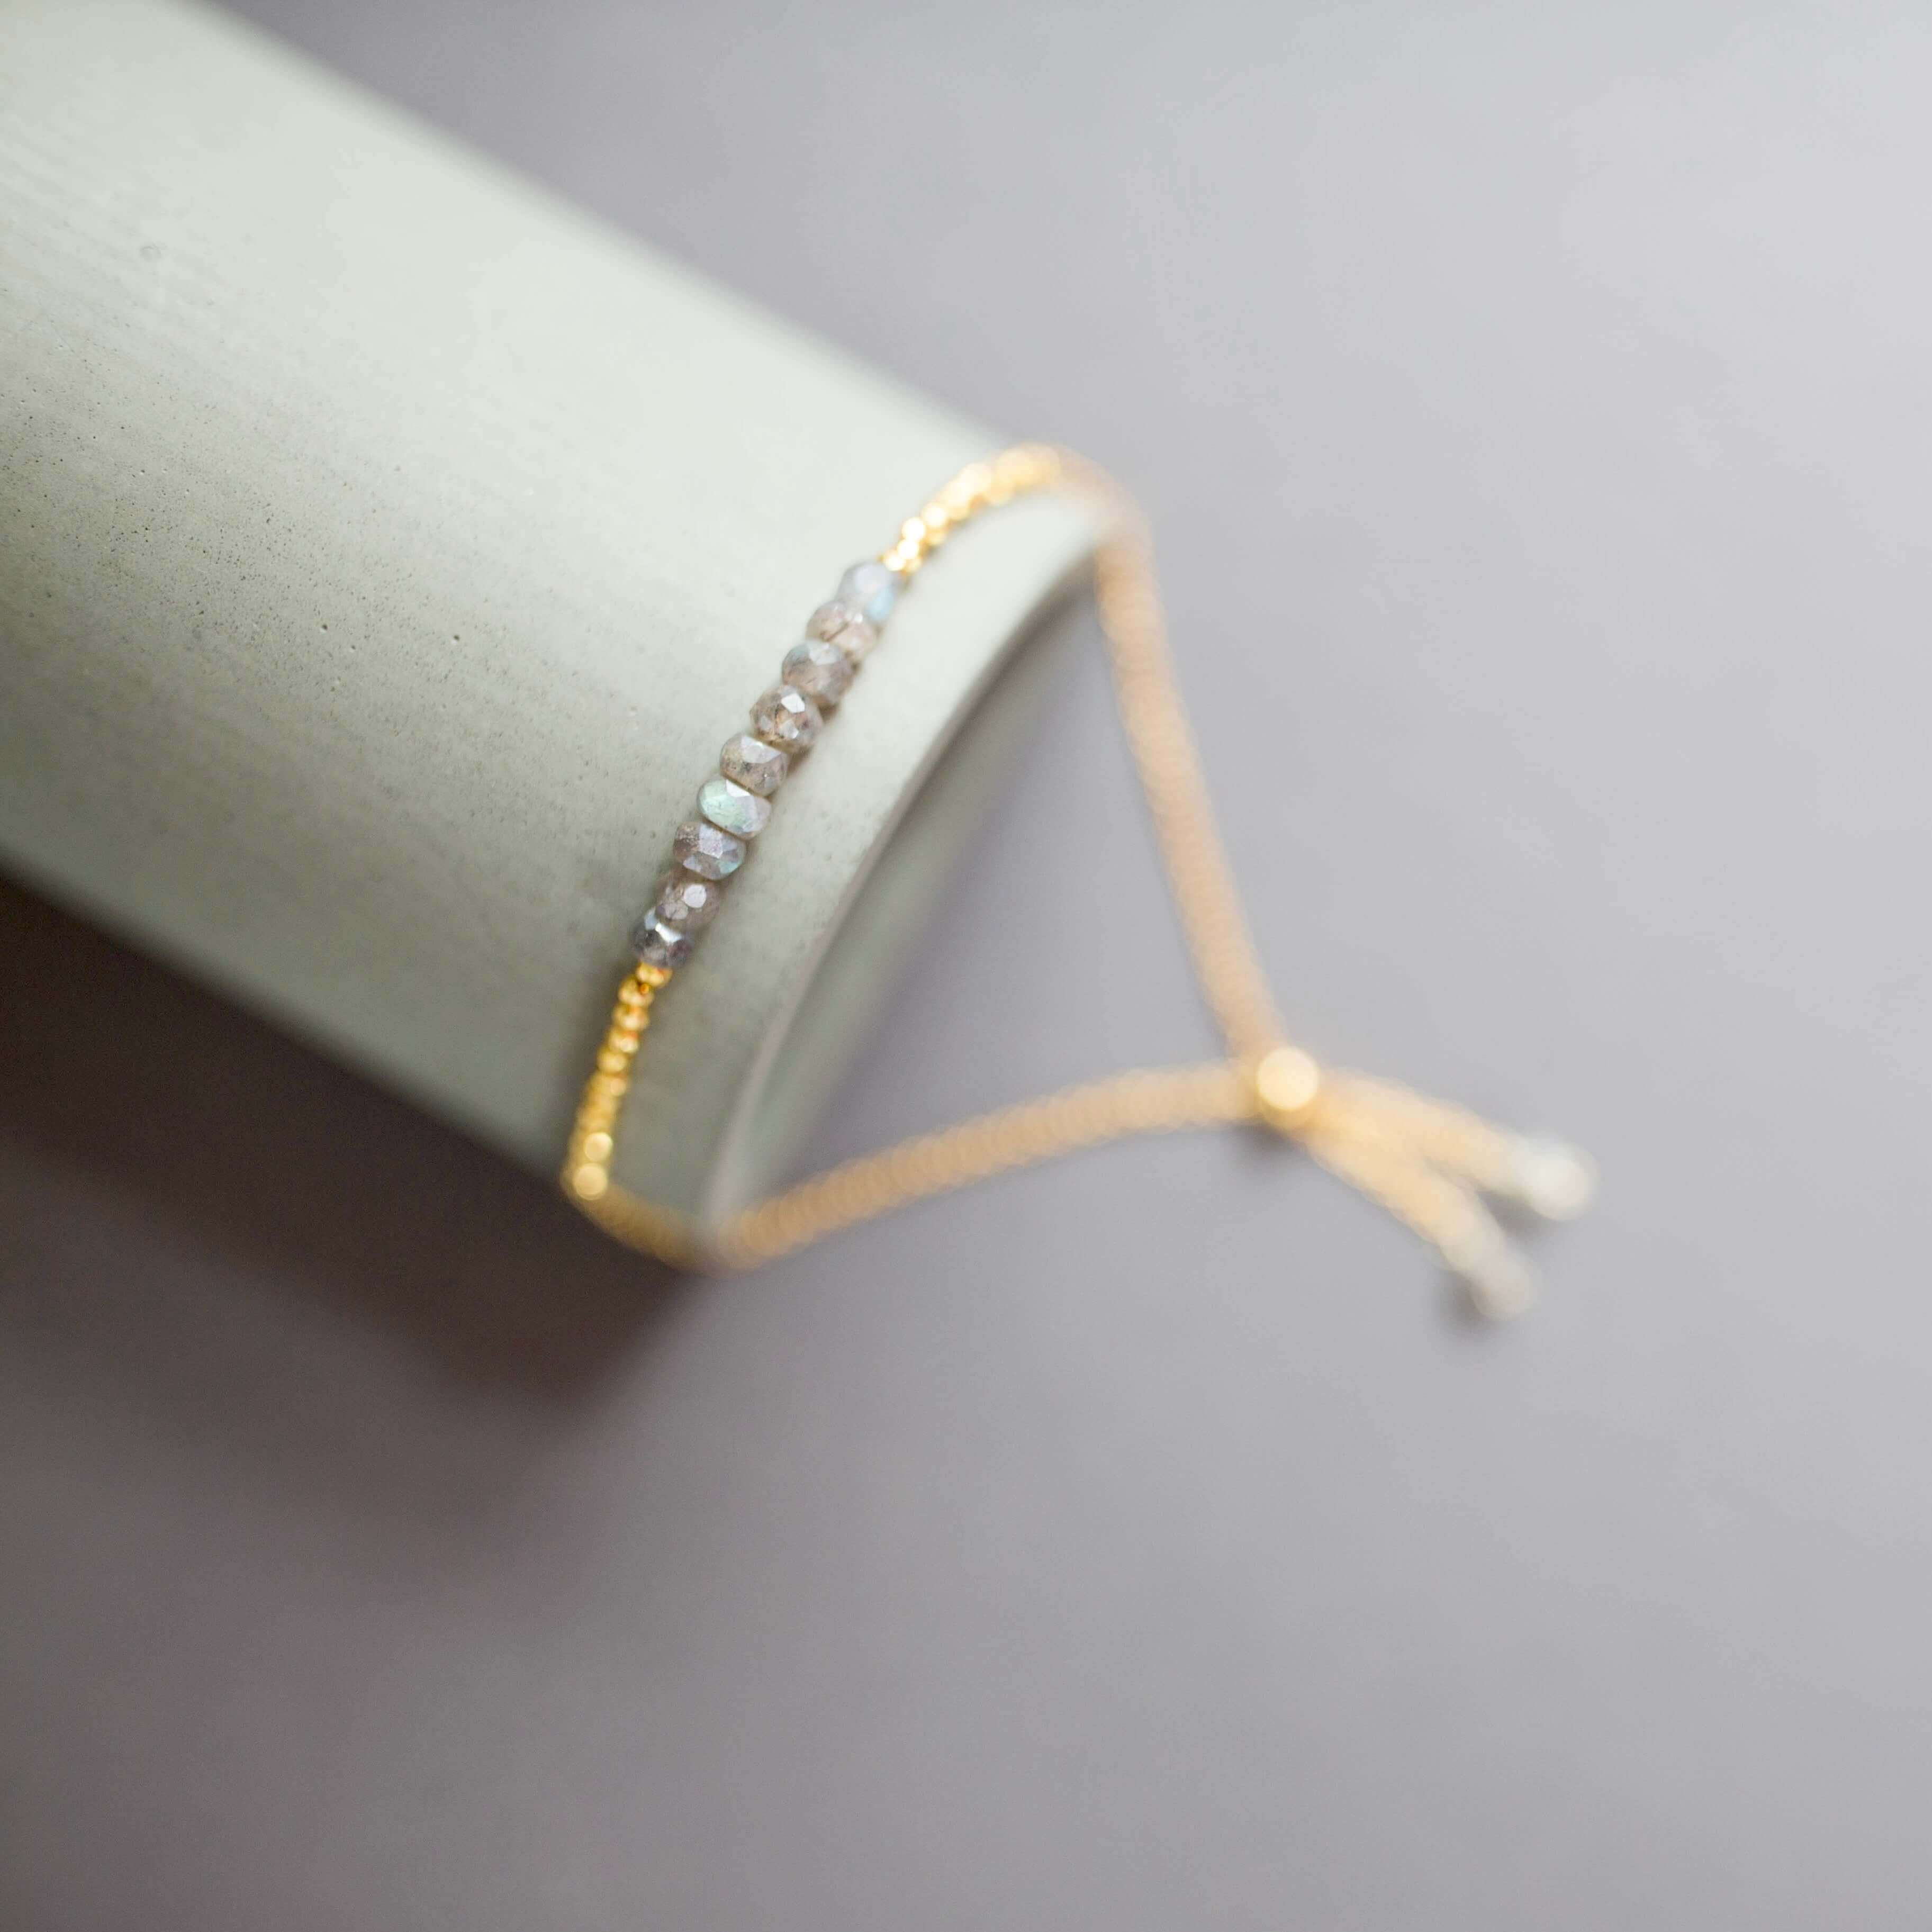 Adjustable Slider Bracelet with Labradorite Gems